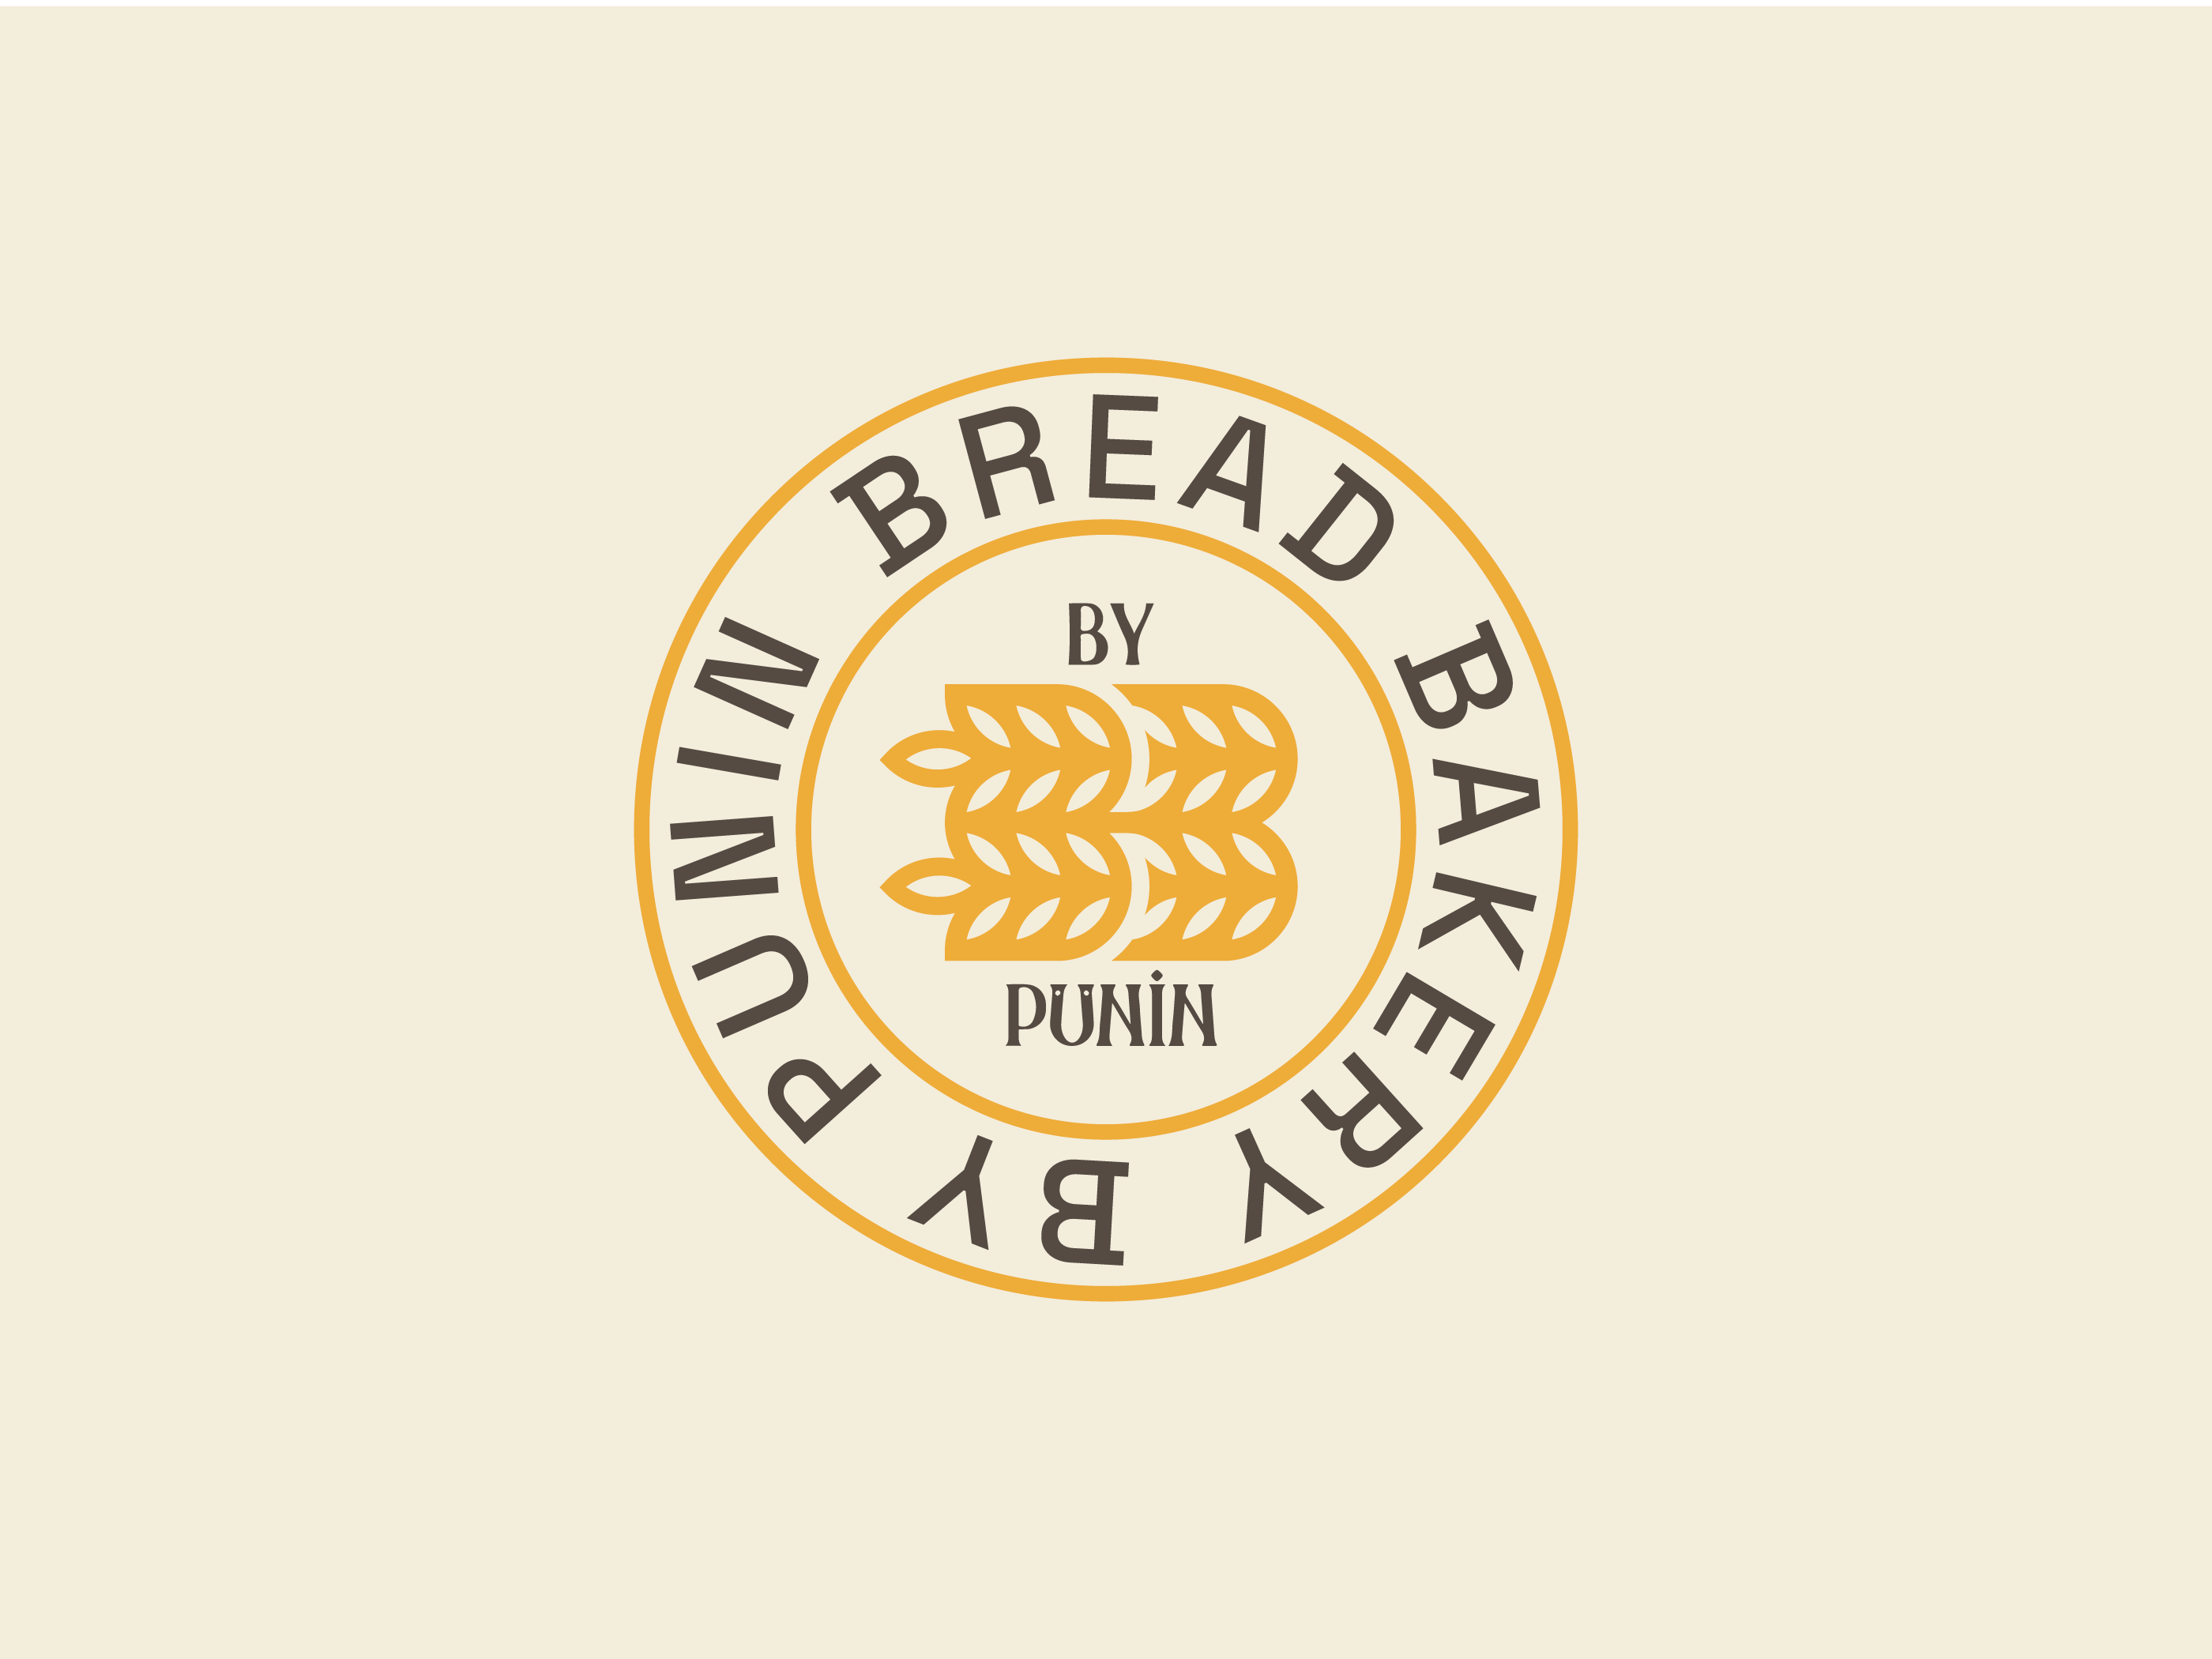 Bread Bakery bakery bread logo symbol